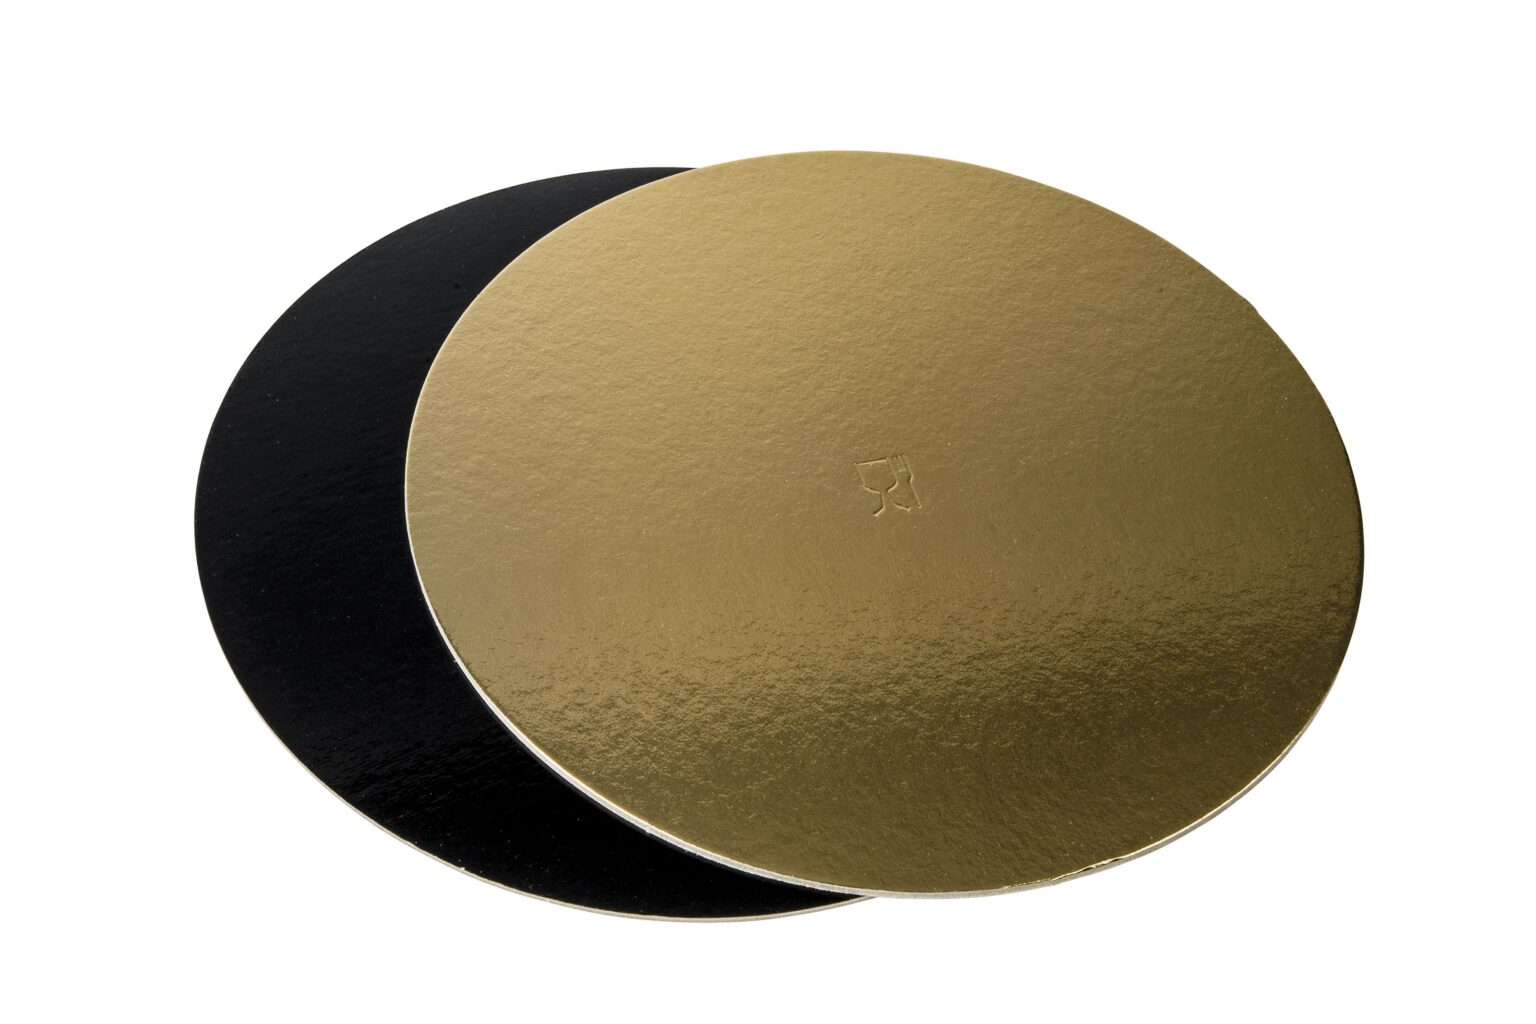 Discuri groase auriu/negru - Discuri groase auriu/negru 2400 gr OE34cm -10 buc/set